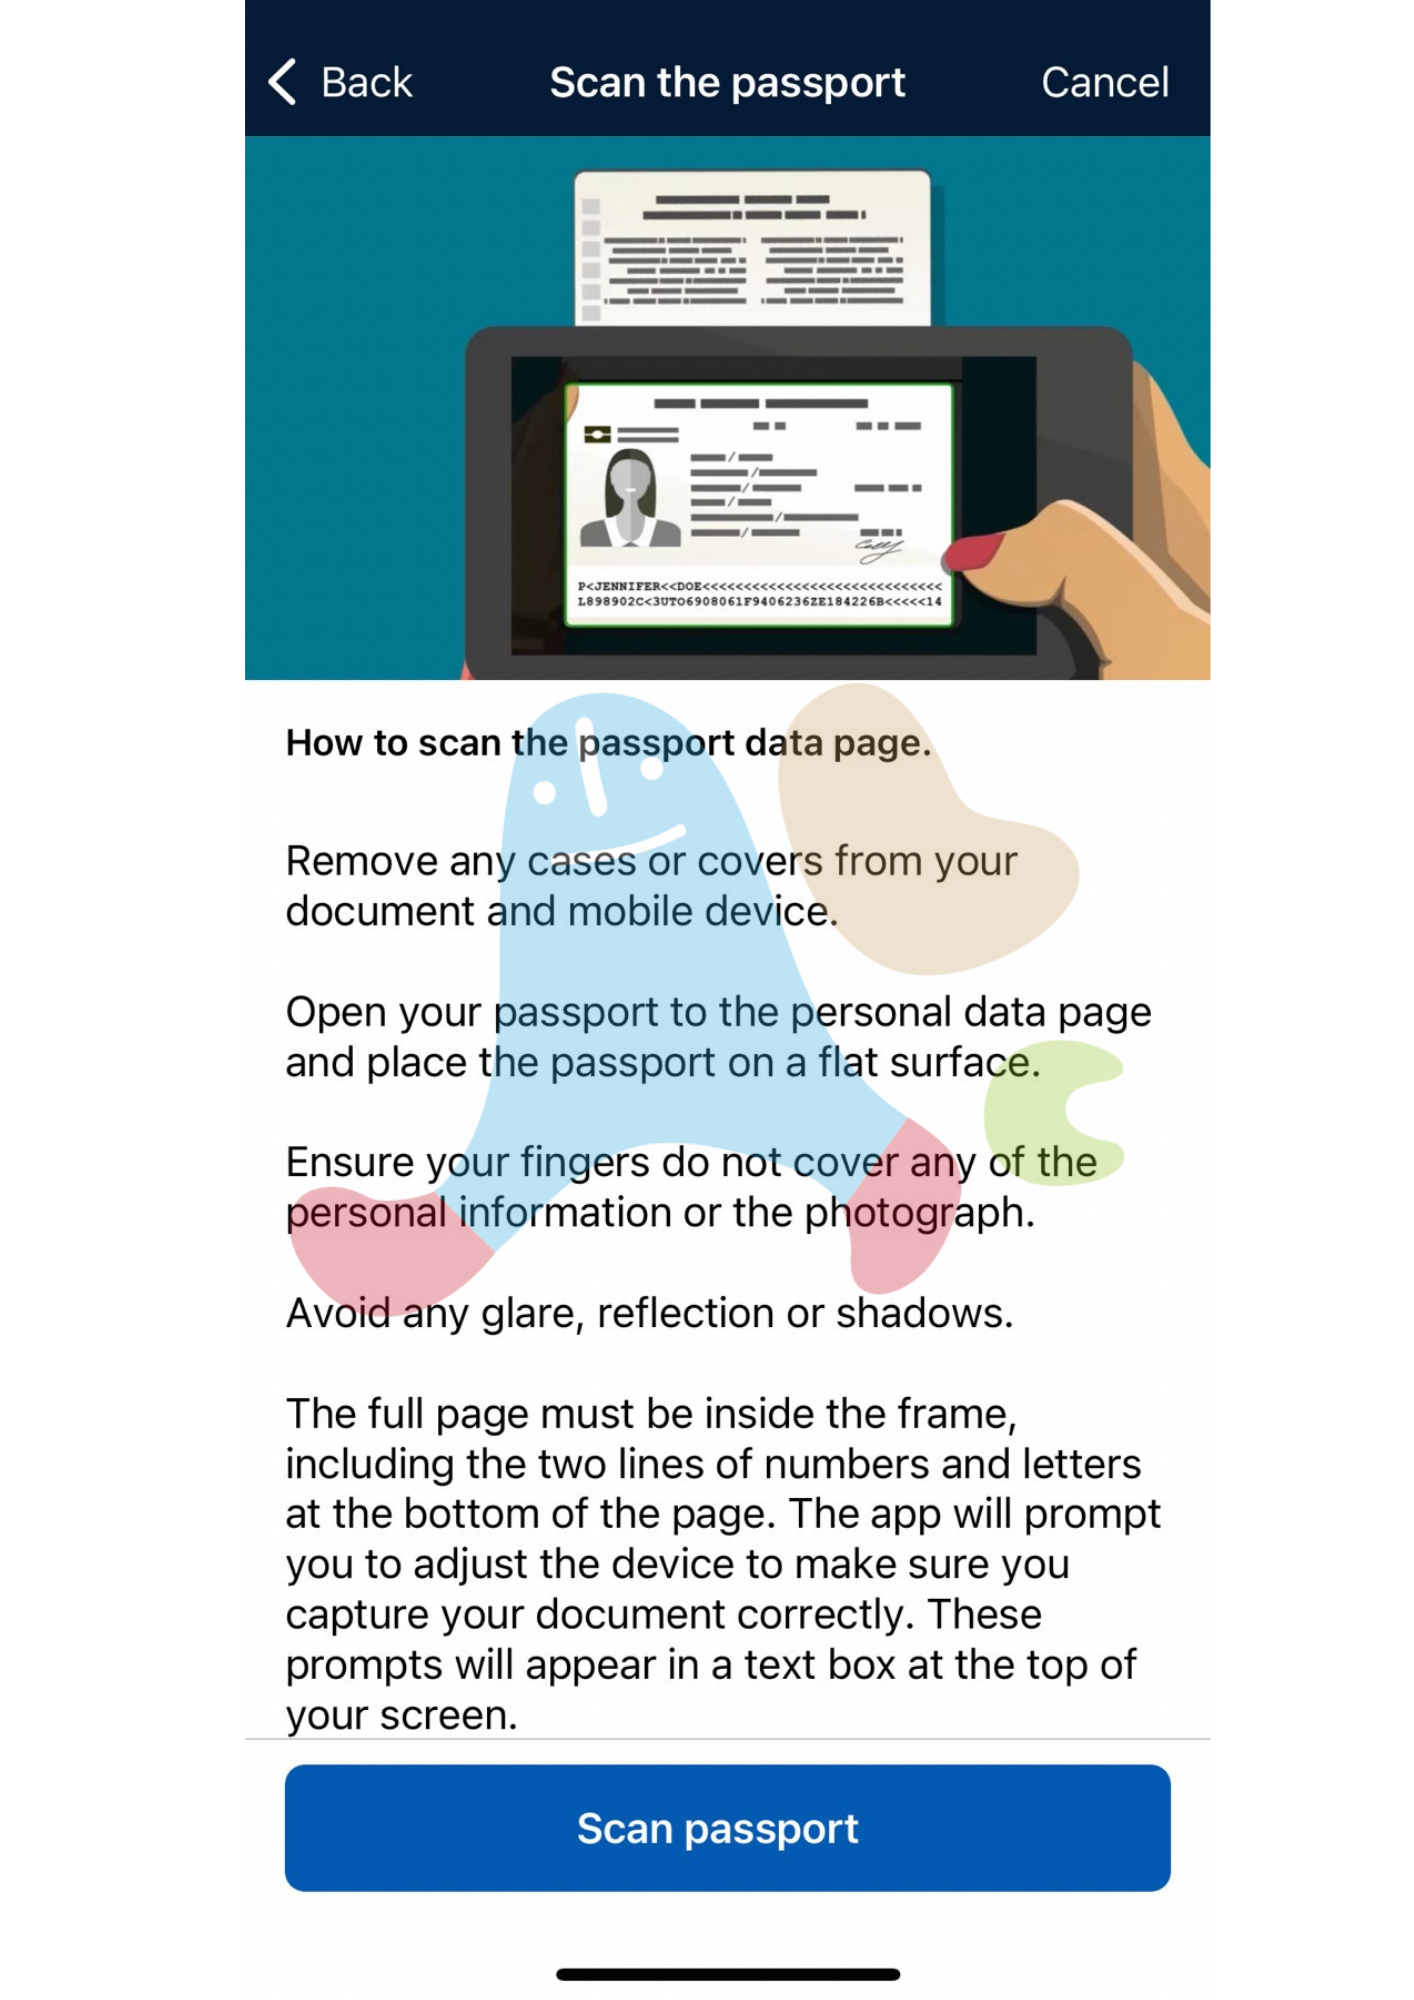 澳洲旅遊簽證AustraliaETA app-掃描護照內頁說明